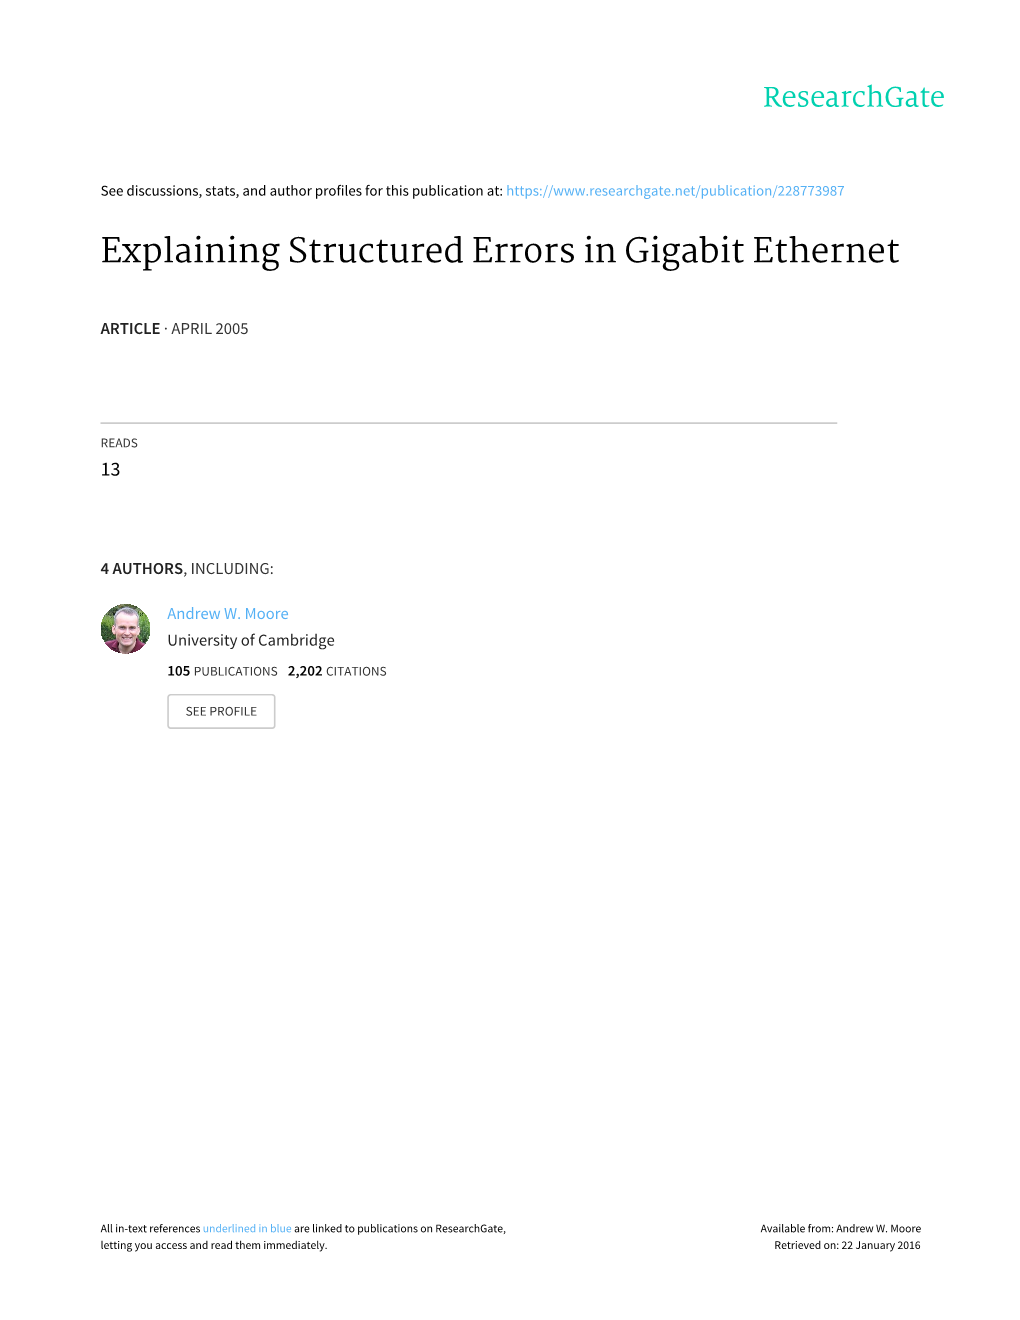 Explaining Structured Errors in Gigabit Ethernet